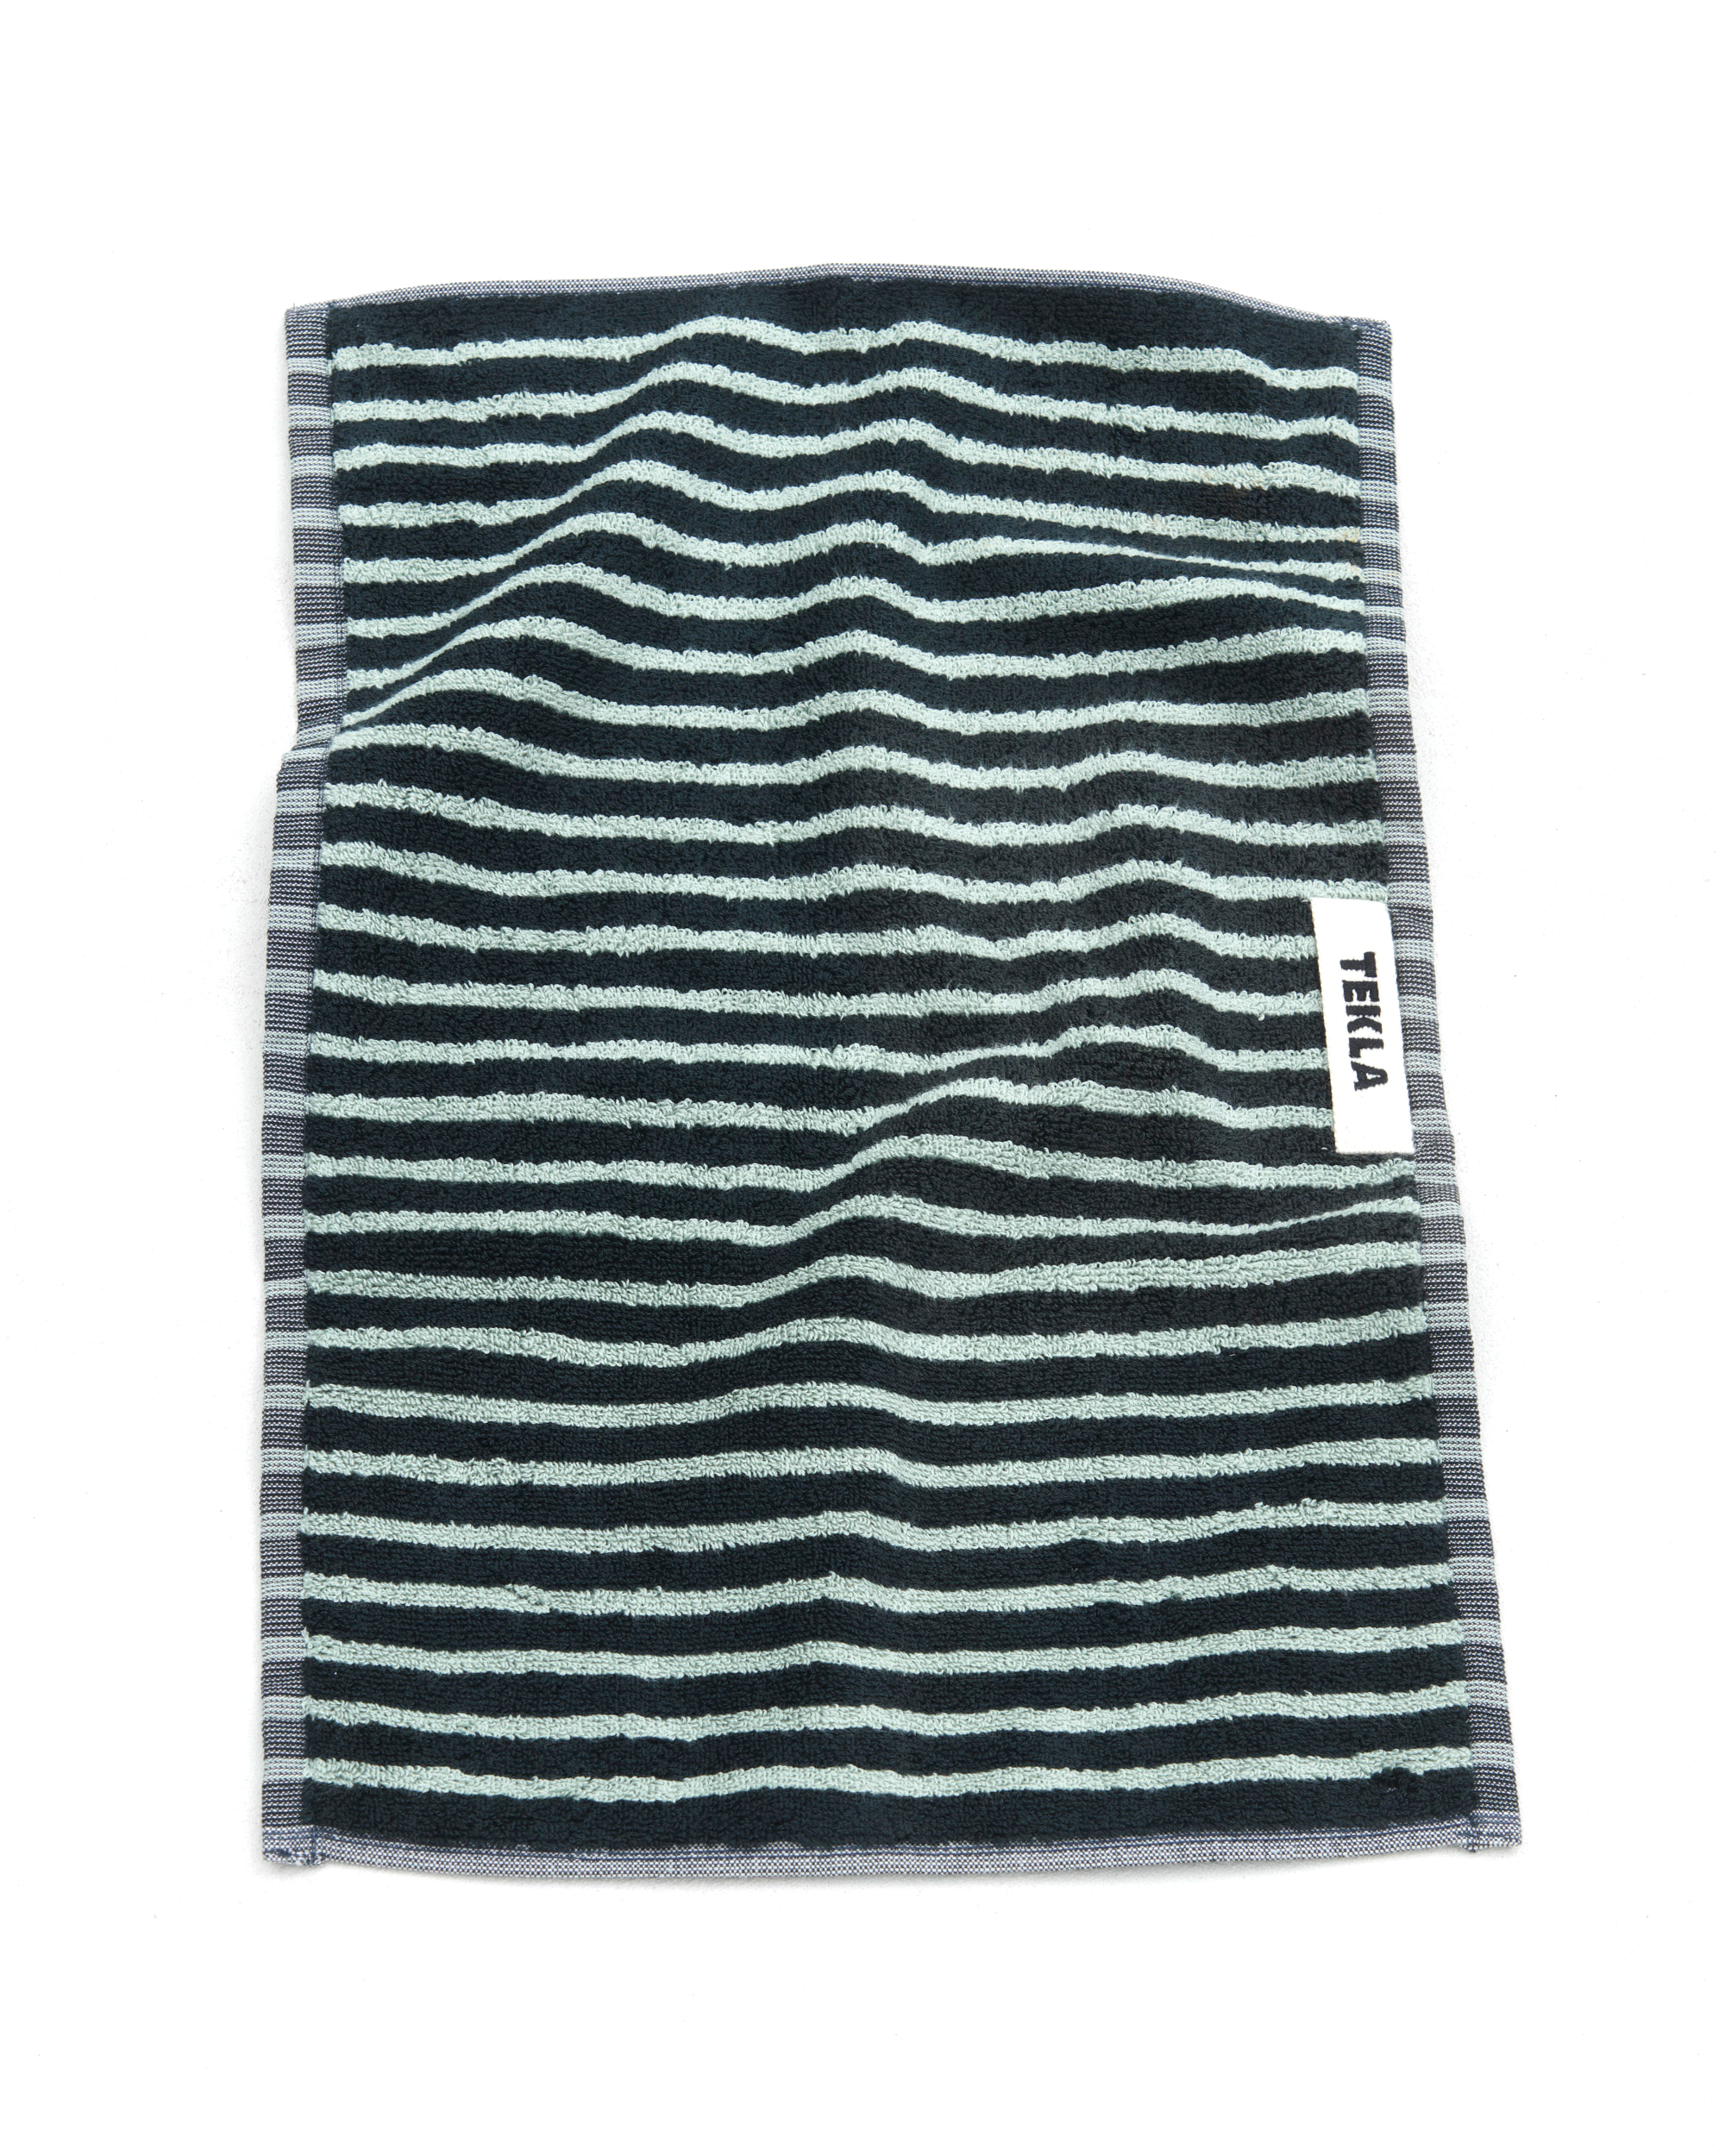 Hand Towel (Striped) - Black / Mint